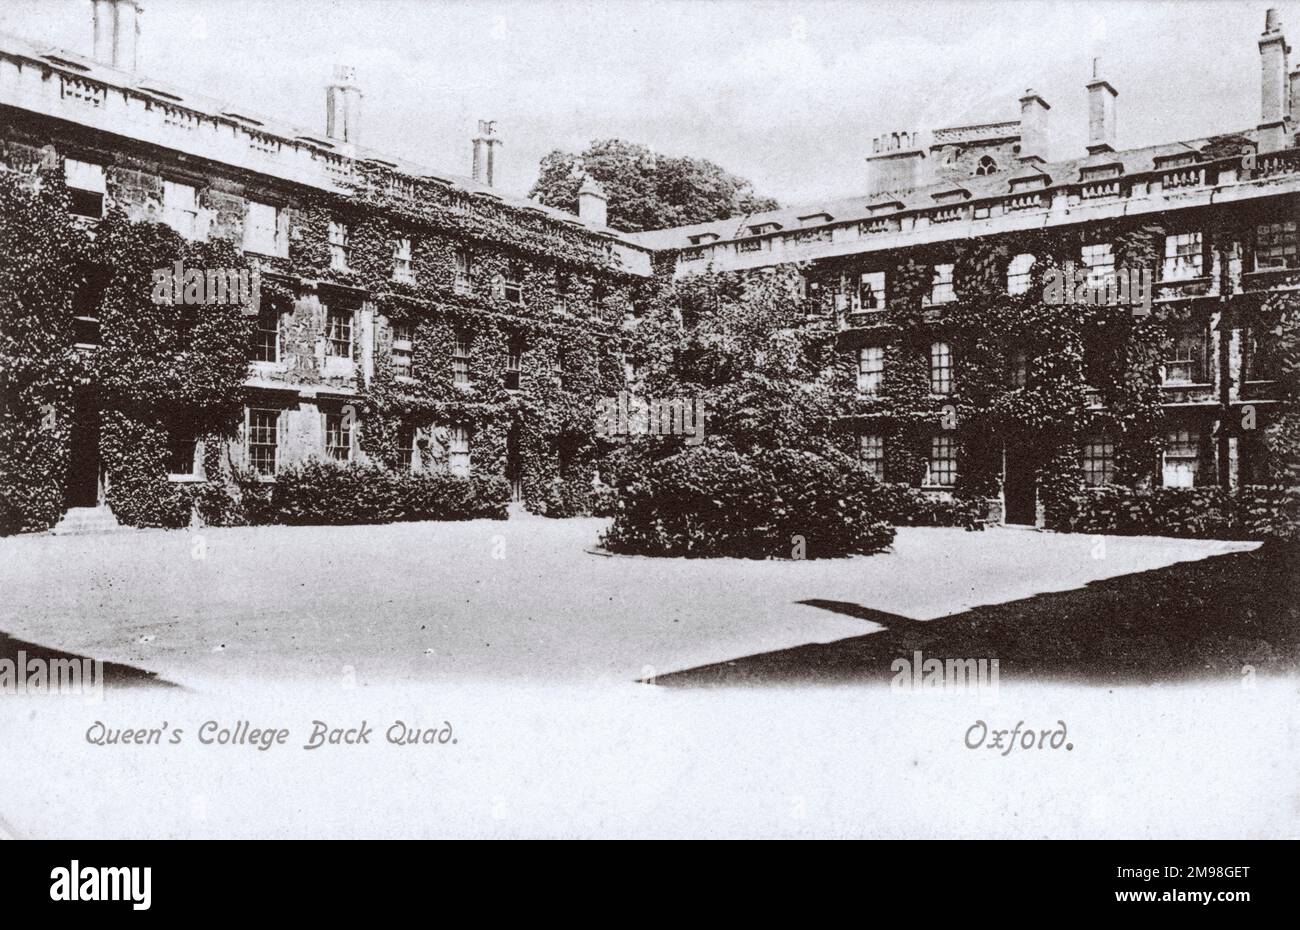 Queen's College Back Quad, Oxford, wo Harold Auerbach im Juni 1917 zwei Wochen während seines Royal Flying Corps Trainings verbrachte. Stockfoto